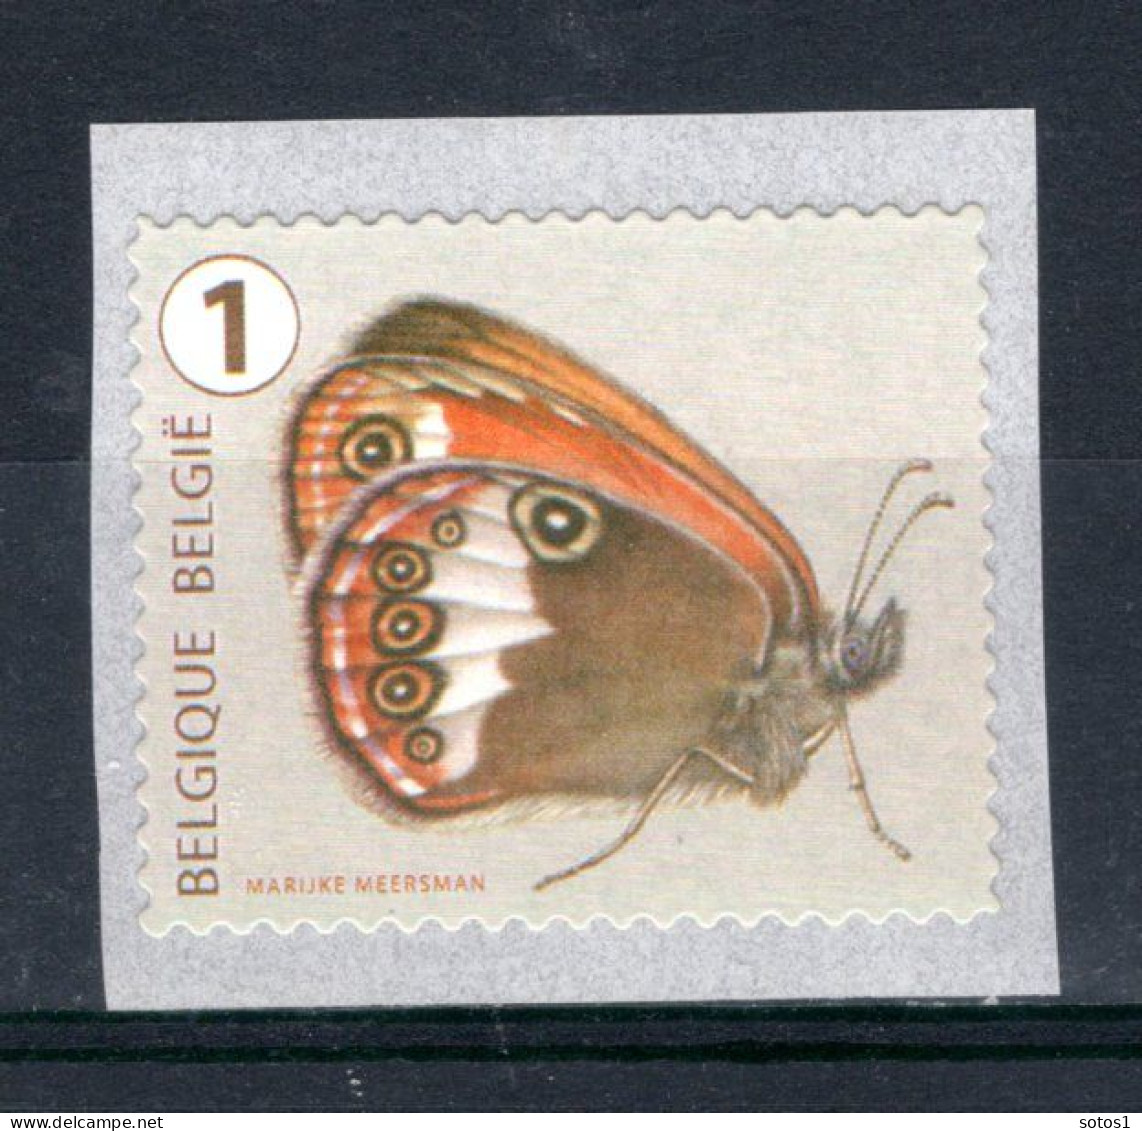 4459 MNH 2014 - Rolzegel Vlinders Met Nummer 65 - Nuevos